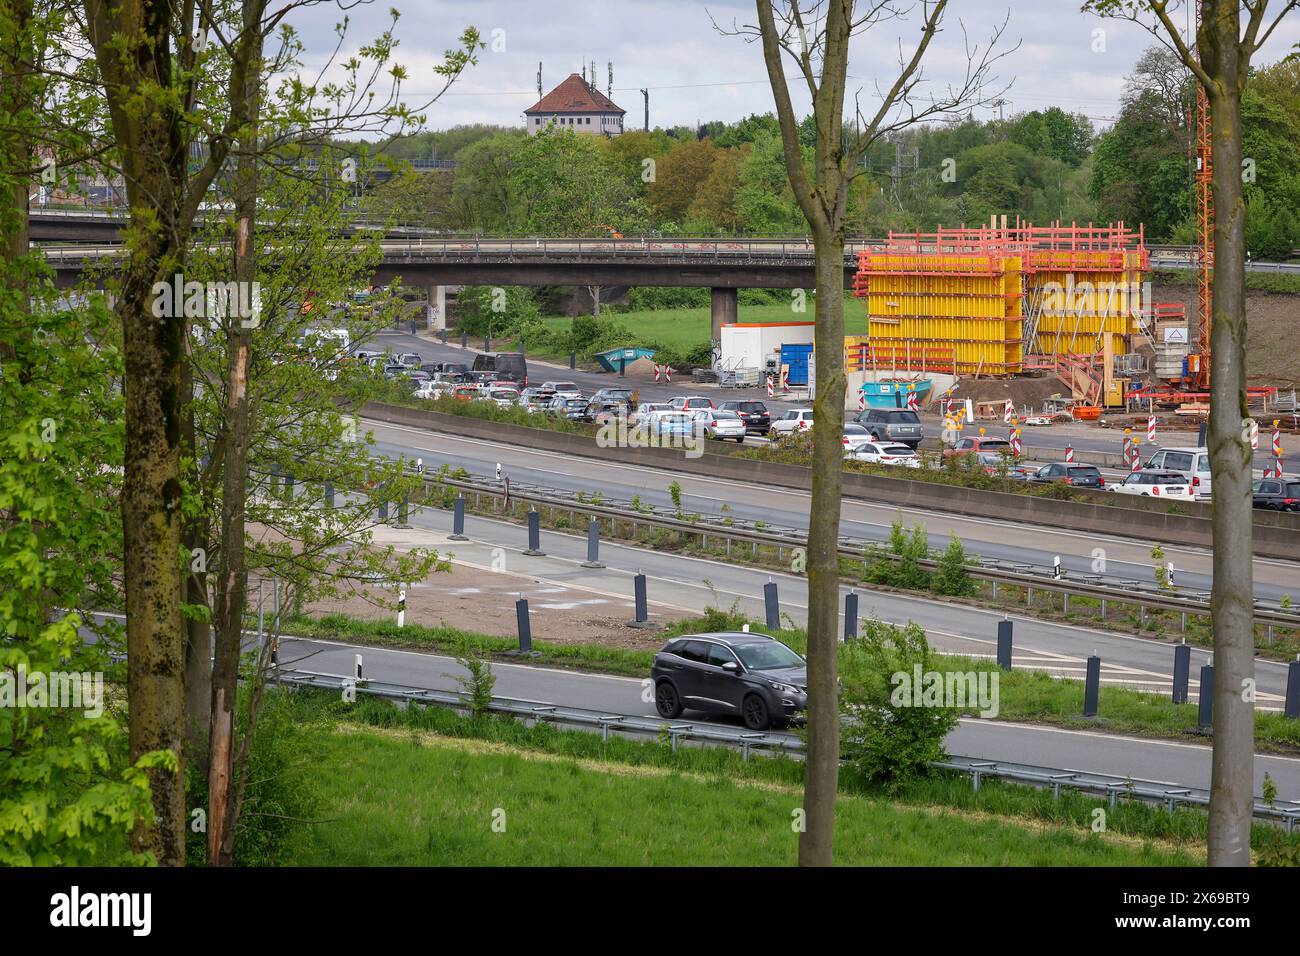 Duisburg, Rhénanie du Nord-Westphalie, Allemagne - embouteillage sur l'autoroute A40 au carrefour de Kaiserberg. La zone animée avec les autoroutes A40 et A3 est en cours de rénovation et agrandie depuis des années. Il y a toujours des fermetures ou des restrictions pour les automobilistes. Banque D'Images